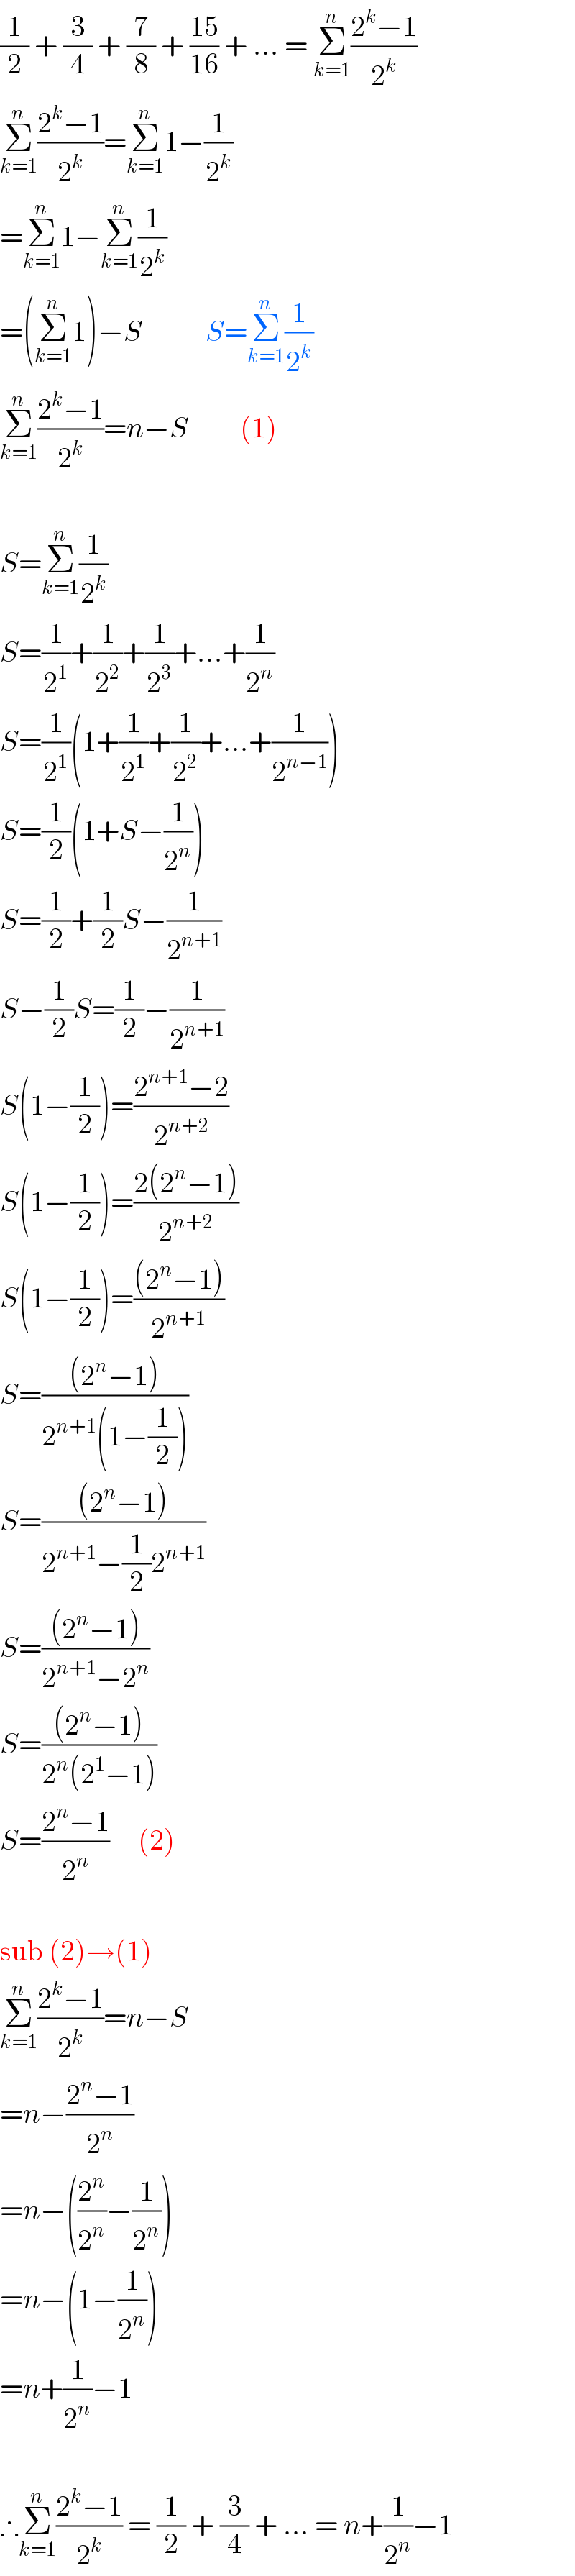 (1/2) + (3/4) + (7/8) + ((15)/(16)) + ... = Σ_(k=1) ^n ((2^k −1)/2^k )  Σ_(k=1) ^n ((2^k −1)/2^k )=Σ_(k=1) ^n 1−(1/2^k )  =Σ_(k=1) ^n 1−Σ_(k=1) ^n (1/2^k )  =(Σ_(k=1) ^n 1)−S           S=Σ_(k=1) ^n (1/2^k )  Σ_(k=1) ^n ((2^k −1)/2^k )=n−S         (1)     S=Σ_(k=1) ^n (1/2^k )  S=(1/2^1 )+(1/2^2 )+(1/2^3 )+...+(1/2^n )  S=(1/2^1 )(1+(1/2^1 )+(1/2^2 )+...+(1/2^(n−1) ))  S=(1/2)(1+S−(1/2^n ))  S=(1/2)+(1/2)S−(1/2^(n+1) )  S−(1/2)S=(1/2)−(1/2^(n+1) )  S(1−(1/2))=((2^(n+1) −2)/2^(n+2) )  S(1−(1/2))=((2(2^n −1))/2^(n+2) )  S(1−(1/2))=(((2^n −1))/2^(n+1) )  S=(((2^n −1))/(2^(n+1) (1−(1/2))))  S=(((2^n −1))/(2^(n+1) −(1/2)2^(n+1) ))  S=(((2^n −1))/(2^(n+1) −2^n ))  S=(((2^n −1))/(2^n (2^1 −1)))  S=((2^n −1)/2^n )     (2)     sub (2)→(1)  Σ_(k=1) ^n ((2^k −1)/2^k )=n−S  =n−((2^n −1)/2^n )  =n−((2^n /2^n )−(1/2^n ))  =n−(1−(1/2^n ))  =n+(1/2^n )−1     ∴Σ_(k=1) ^n ((2^k −1)/2^k ) = (1/2) + (3/4) + ... = n+(1/2^n )−1  